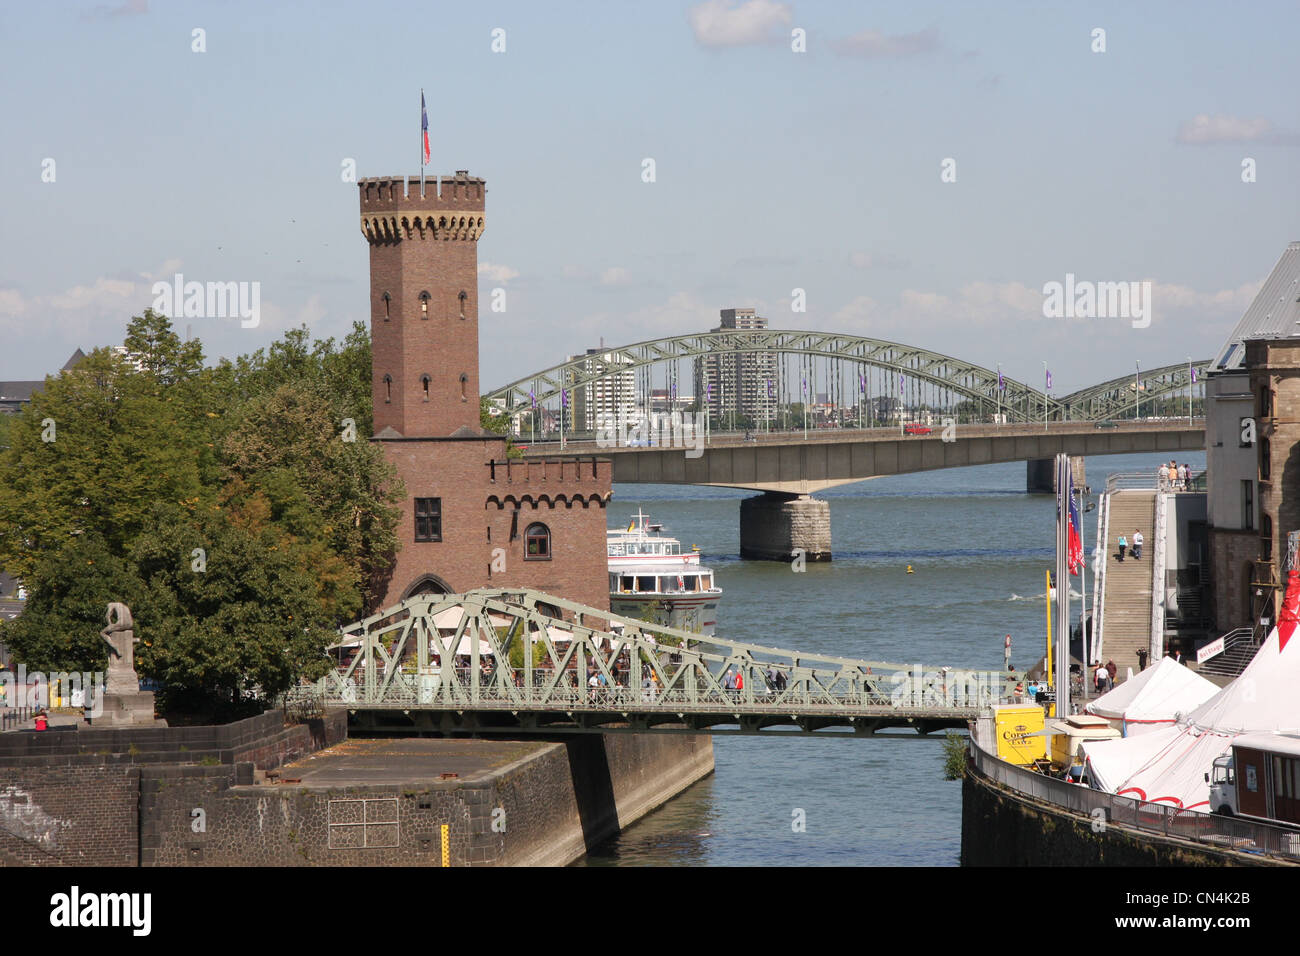 The Malakoff Tower at the Rheinauhafen (Rheinau harbor) in Cologne (Germany) Stock Photo